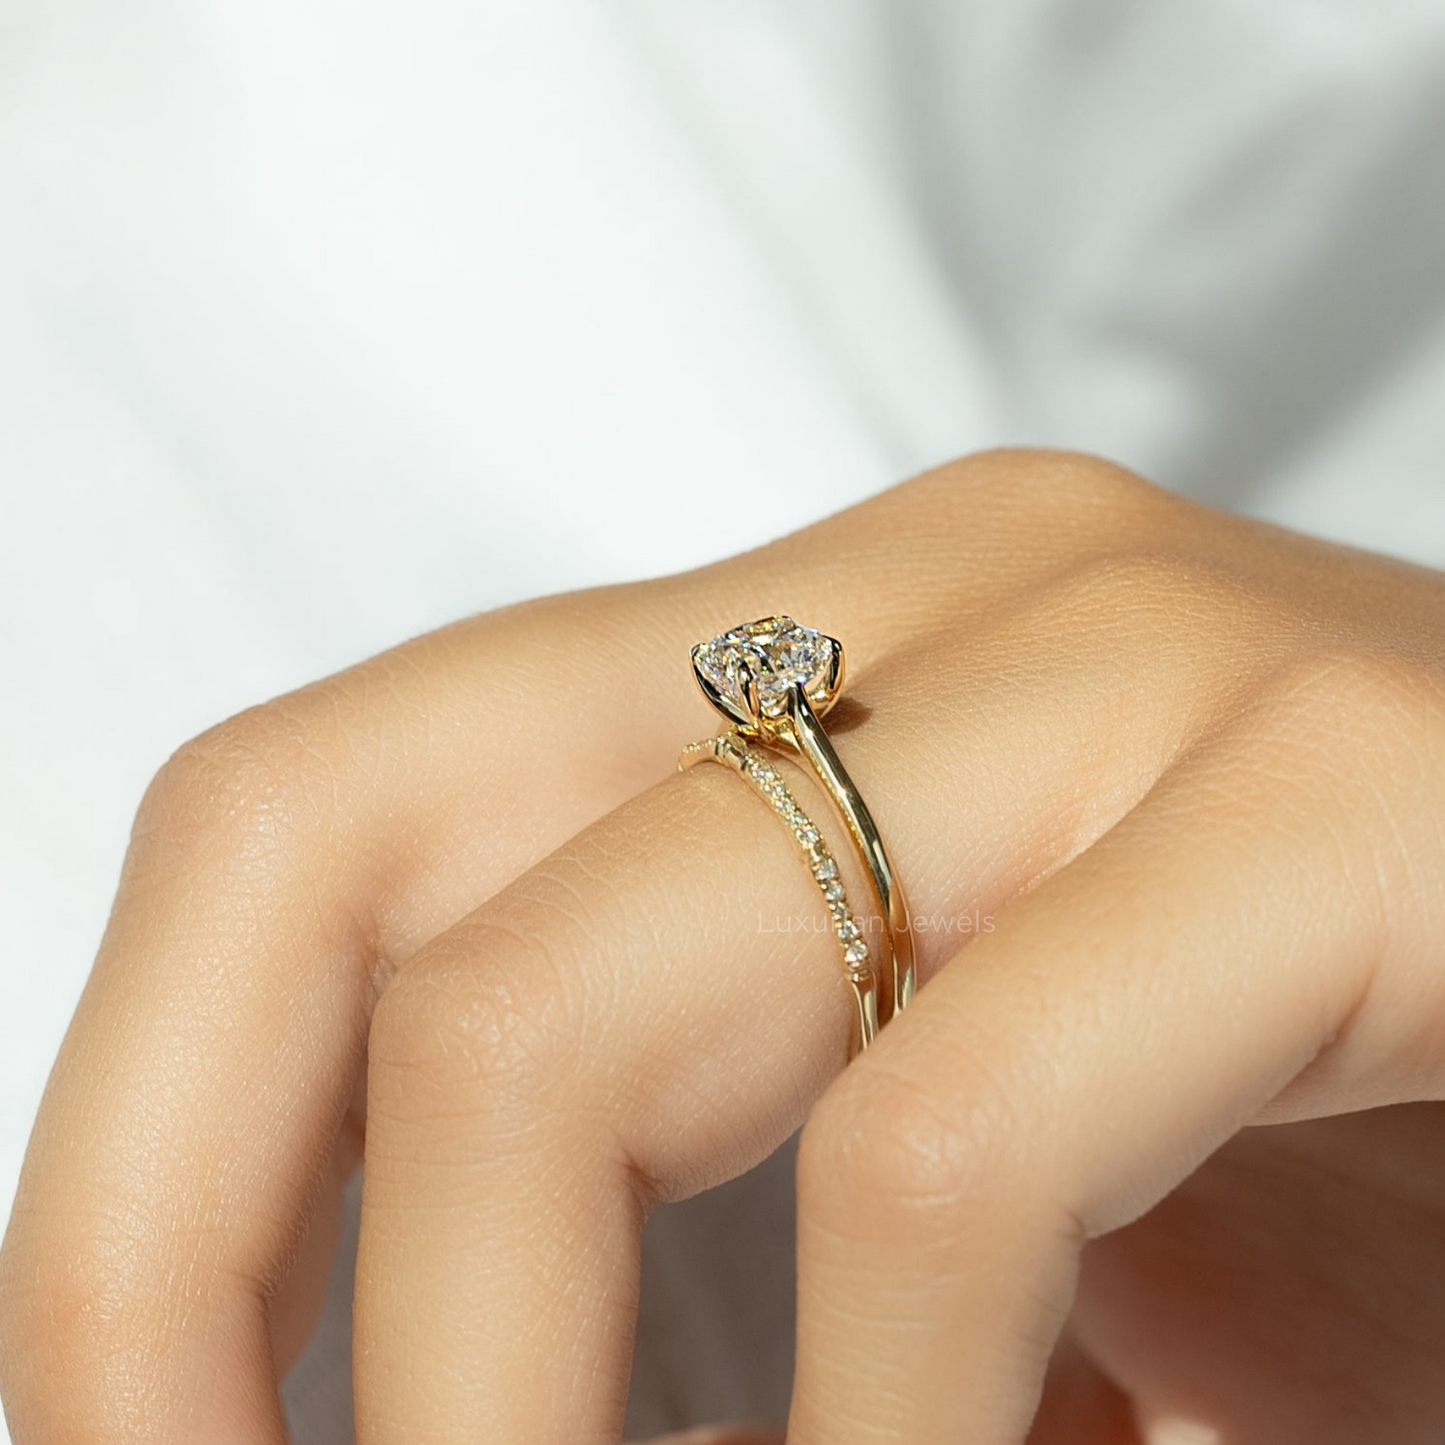 Cushion Cut Lab Grown Diamond Ring